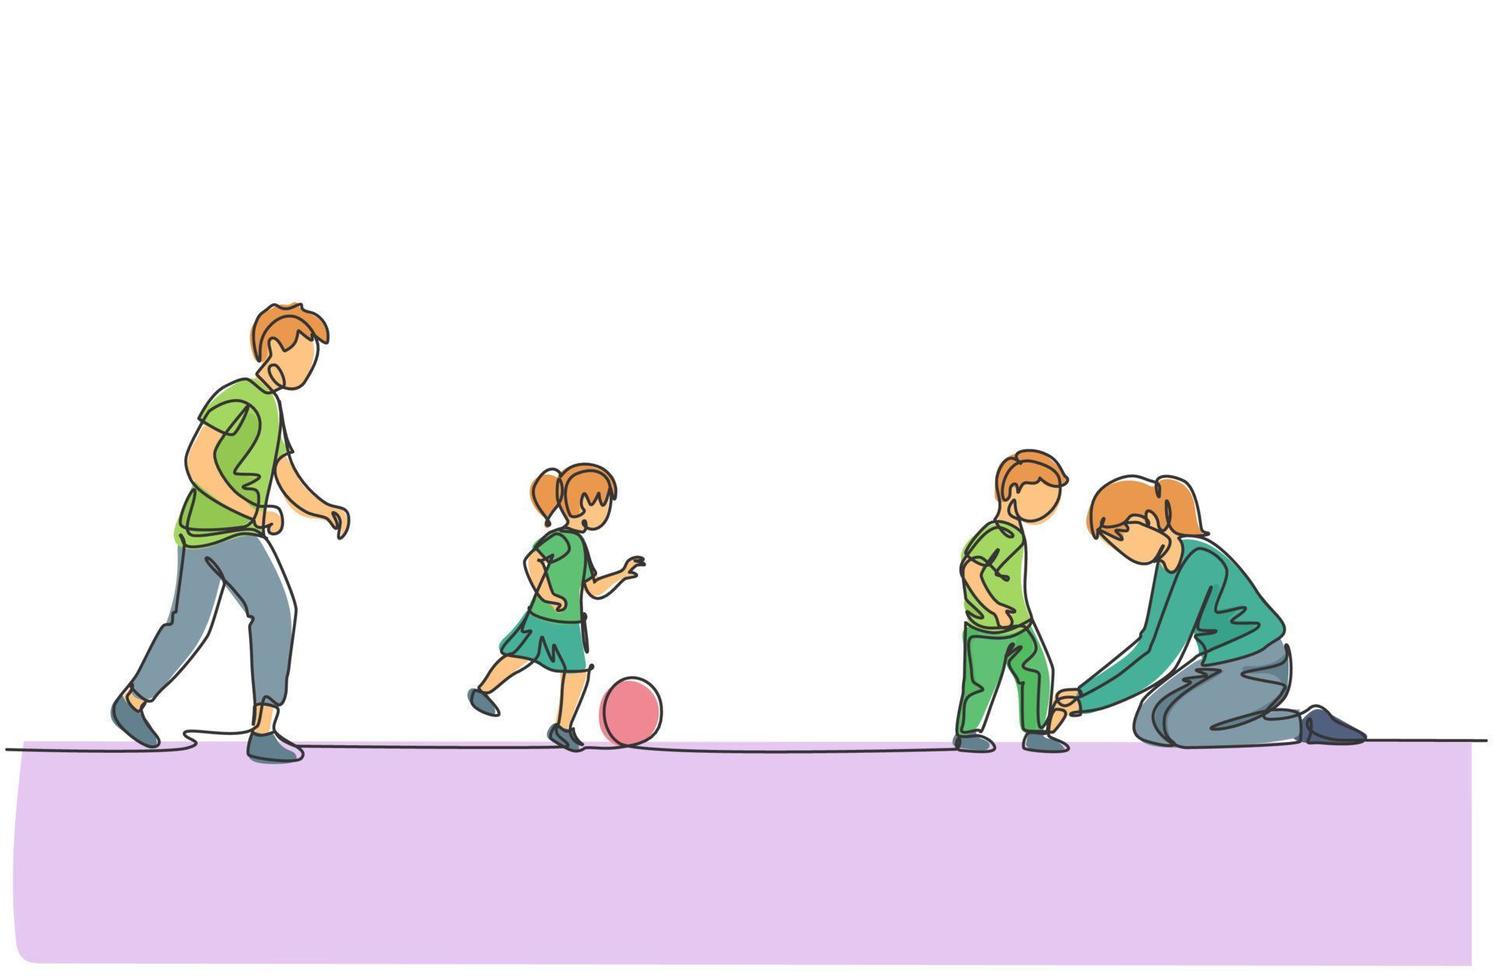 dibujo de una sola línea de papá joven jugando al fútbol con la hija en el campo mientras mamá ata los cordones de los zapatos del hijo ilustración vectorial. concepto de crianza de los hijos de familia feliz. diseño moderno de dibujo de línea continua vector